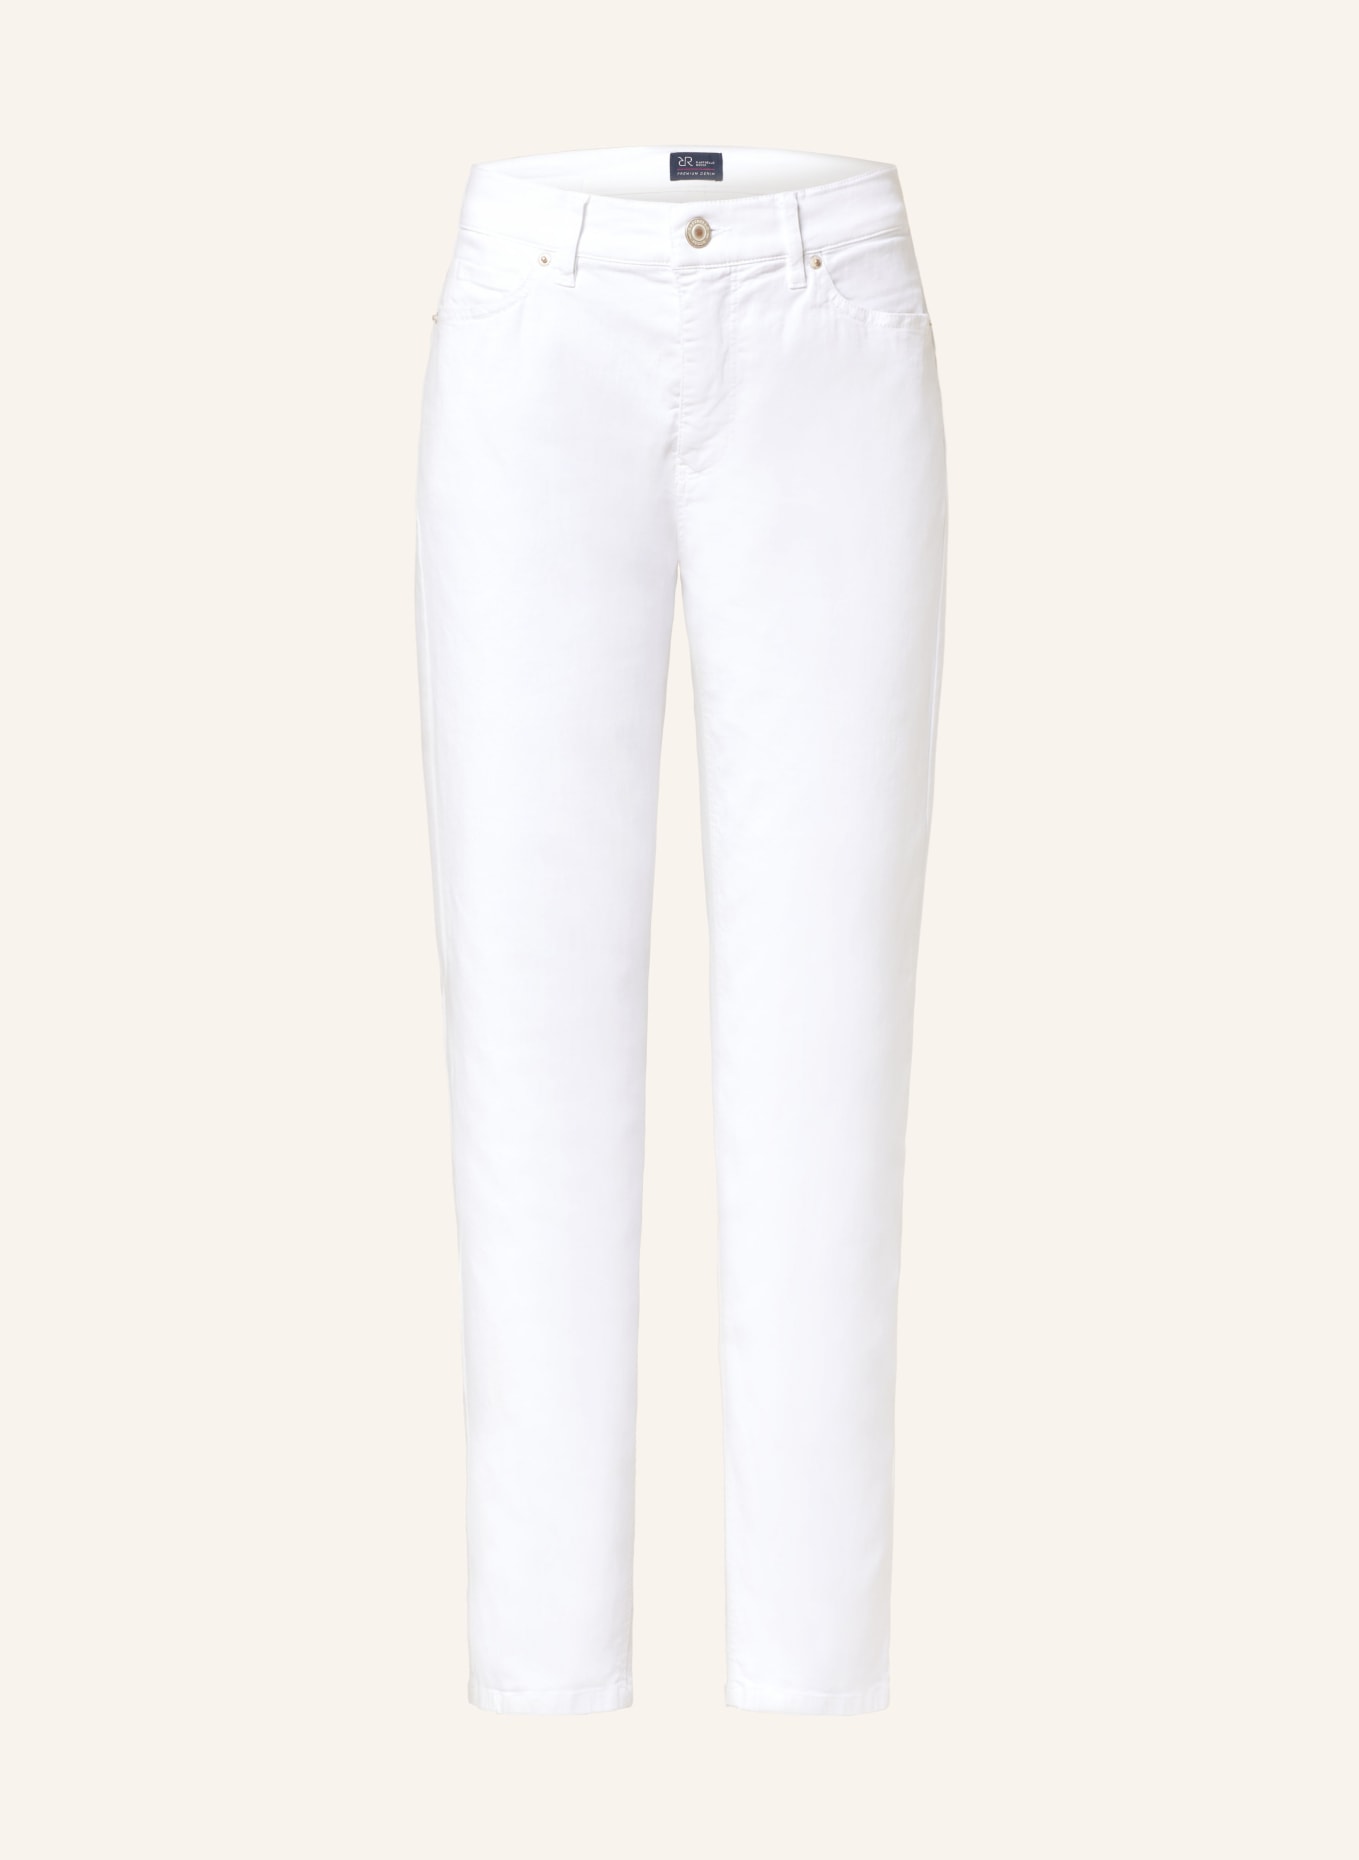 RAFFAELLO ROSSI Jeans SUZY, Farbe: 110 WEISS (Bild 1)